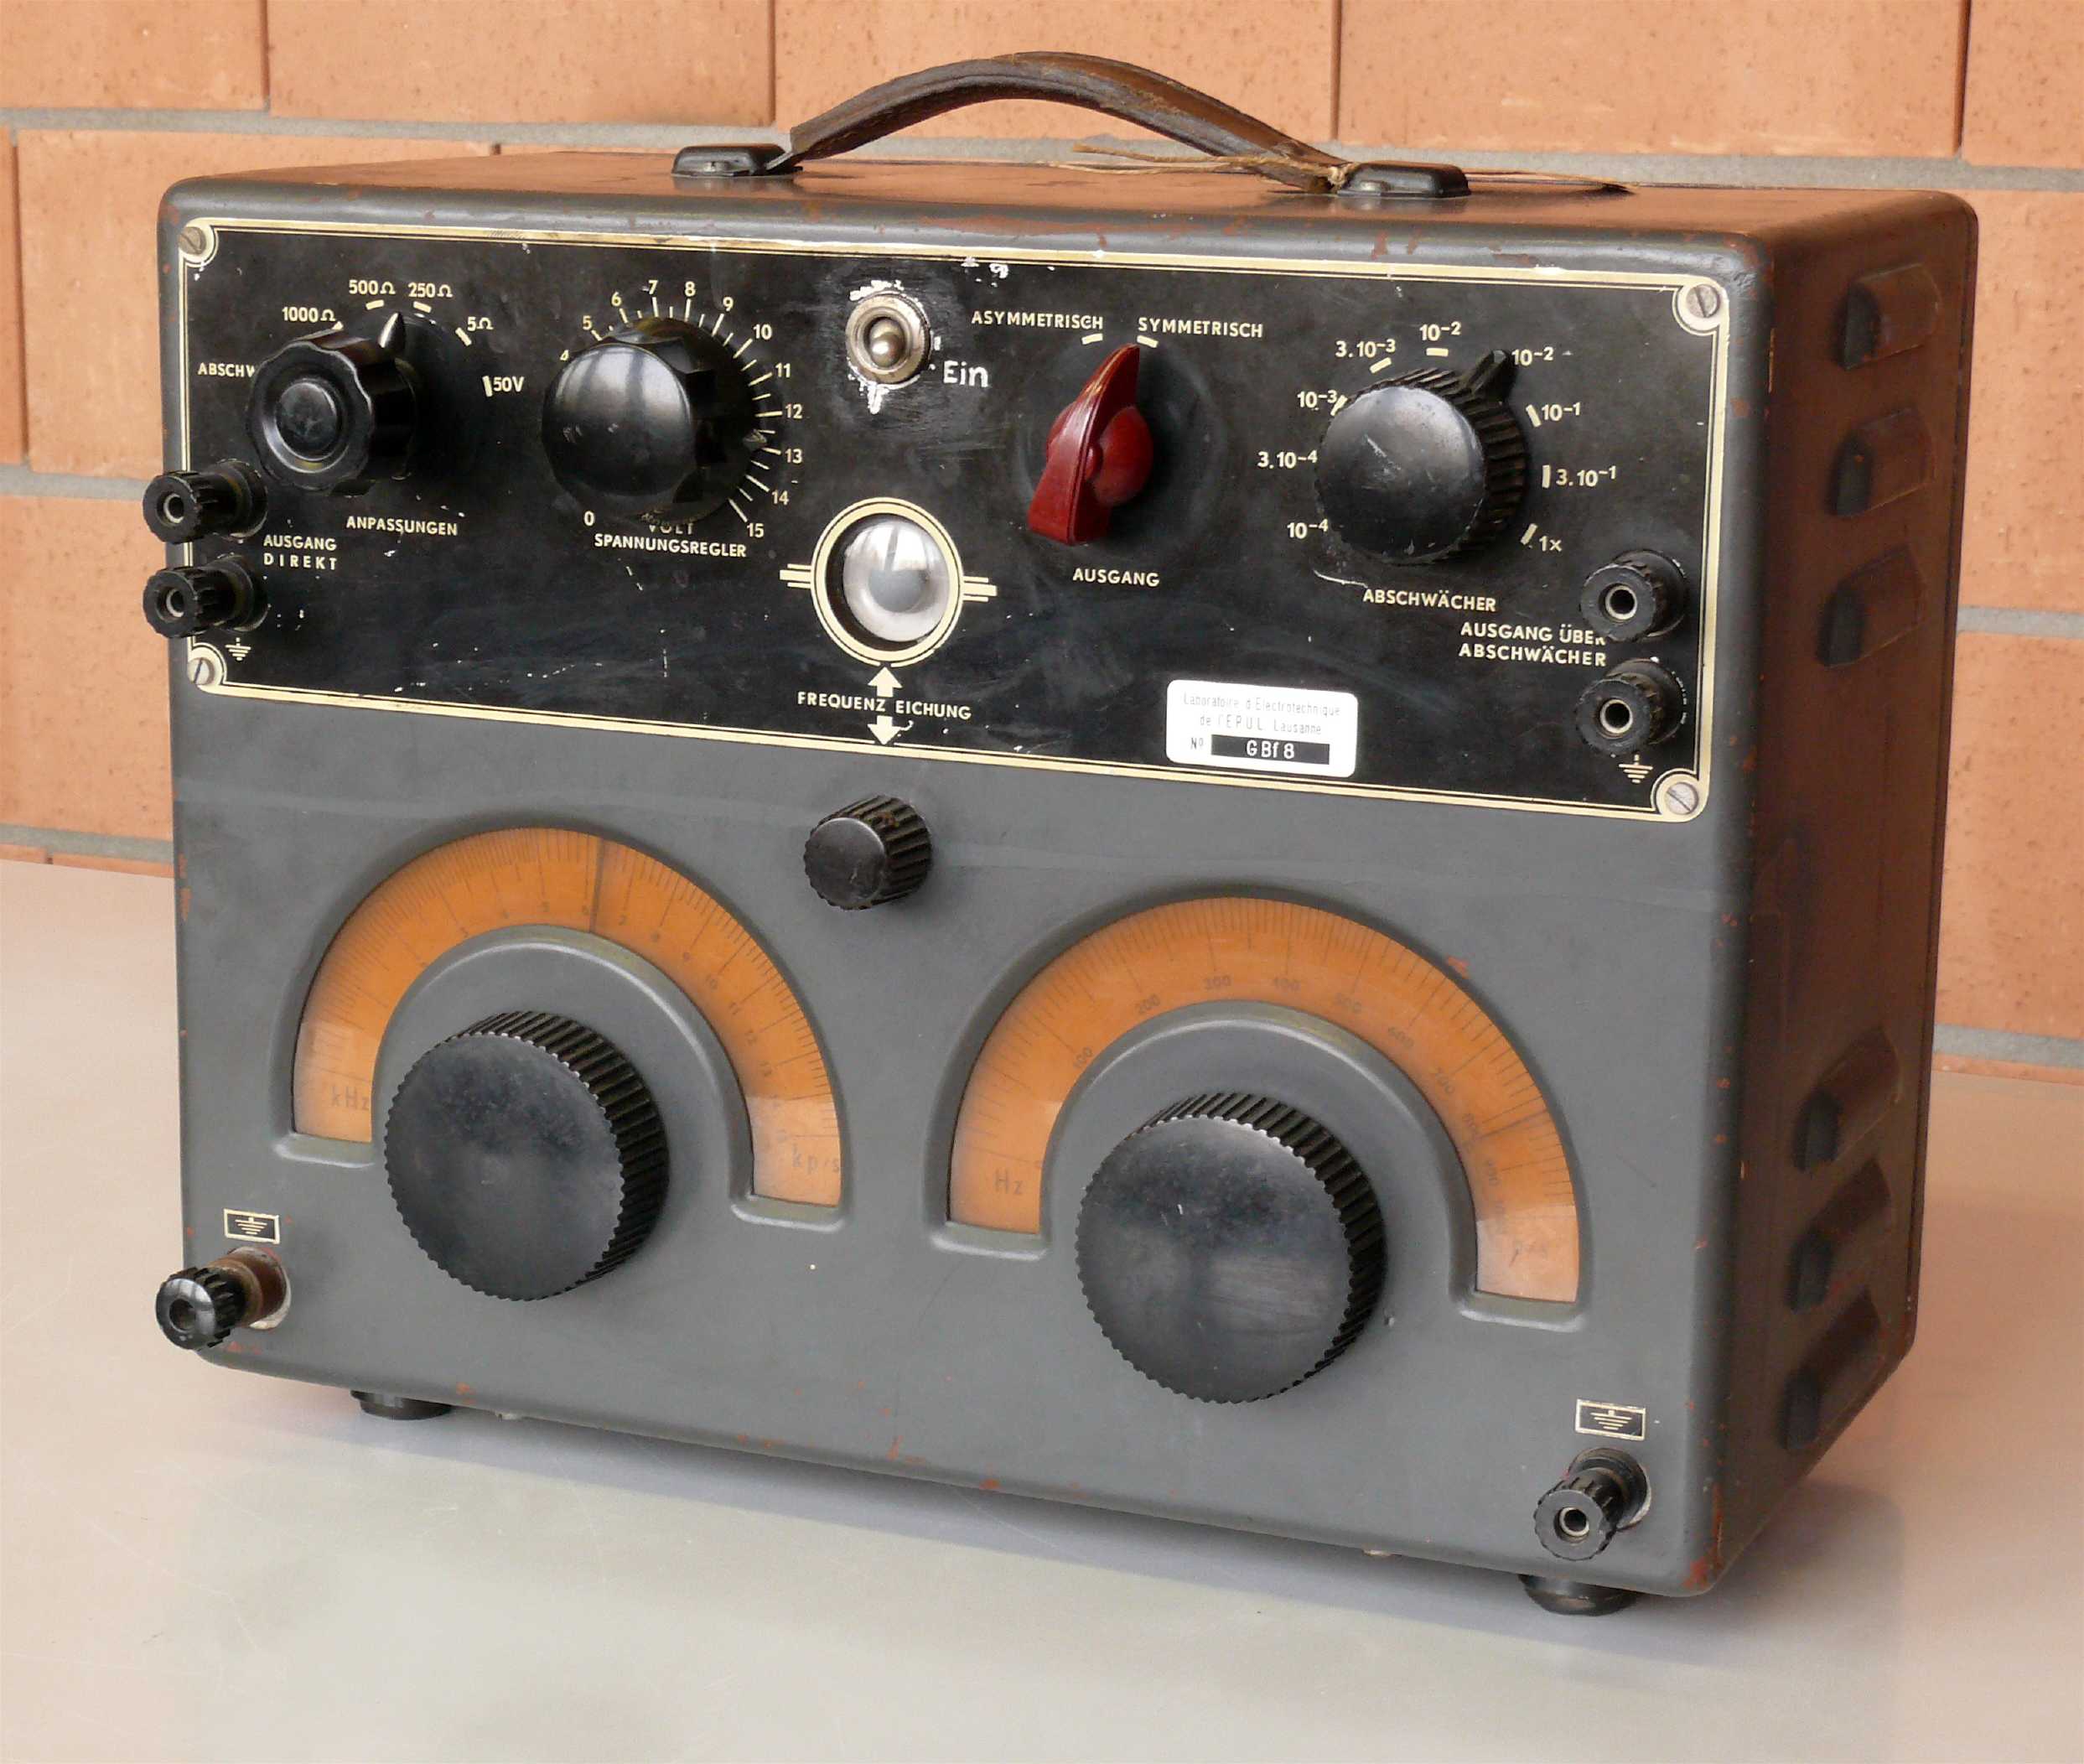 Générateur basse fréquence
(Philips GM 2307)